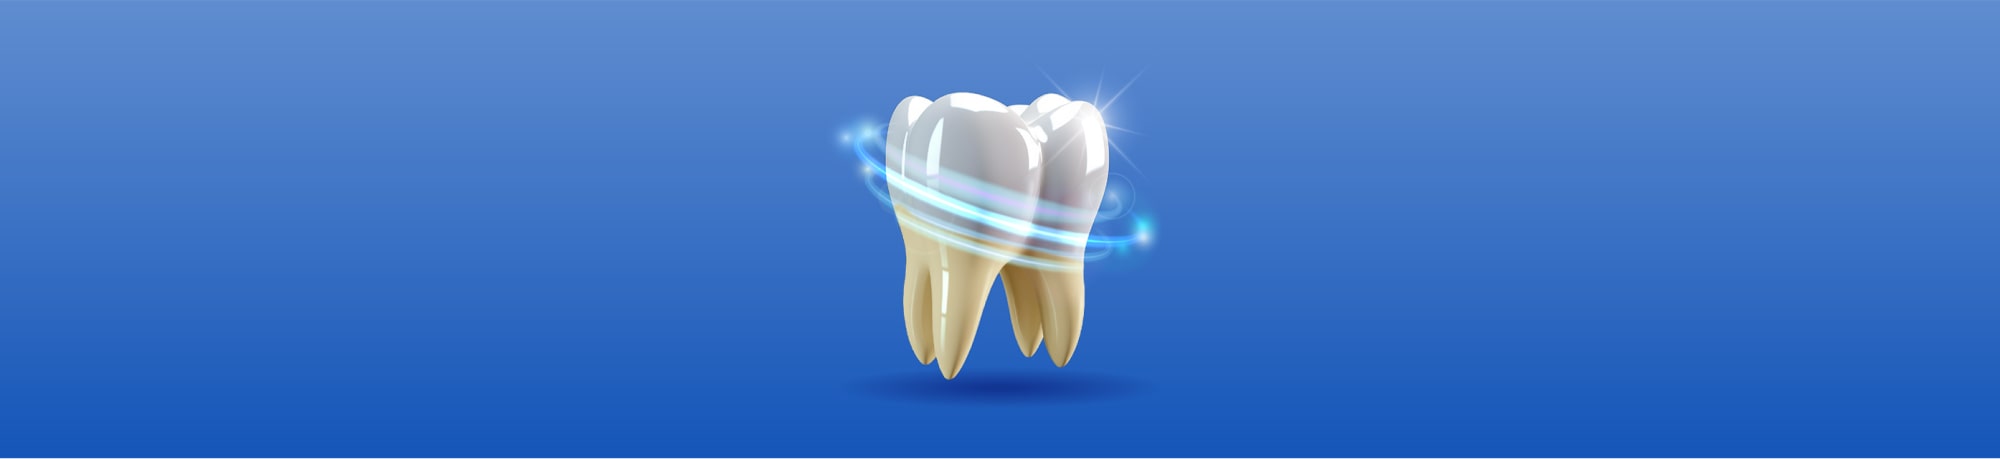 Реминерализация зубов: что это, для чего нужно, как проводят